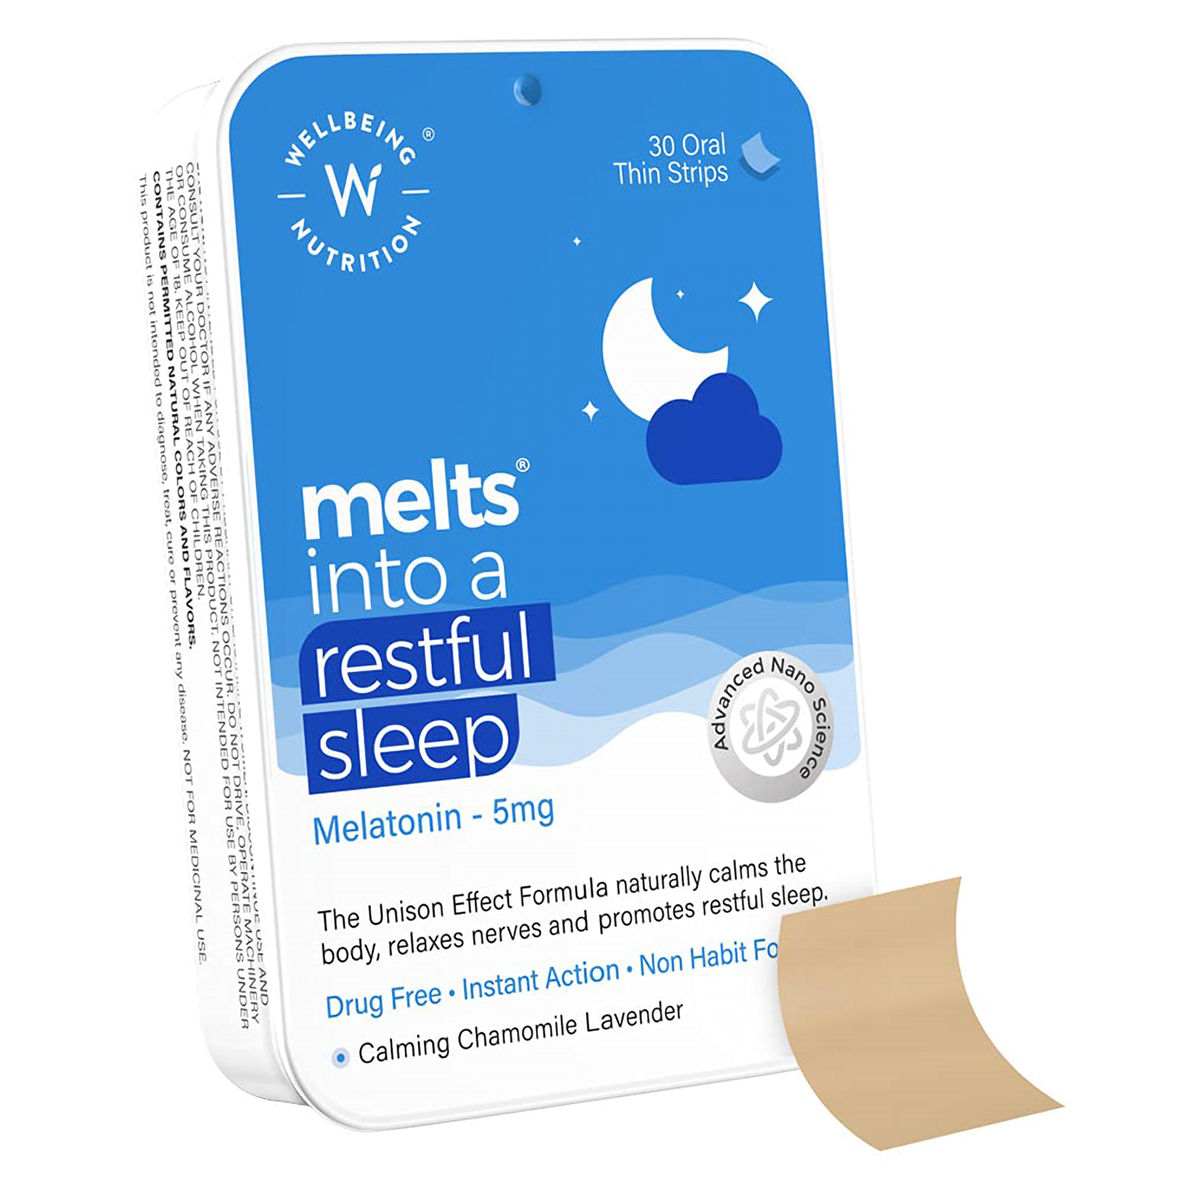 Buy Wellbeing Nutrition Melts Into Restful Sleep Melatonin 5 mg, 30 Strips Online